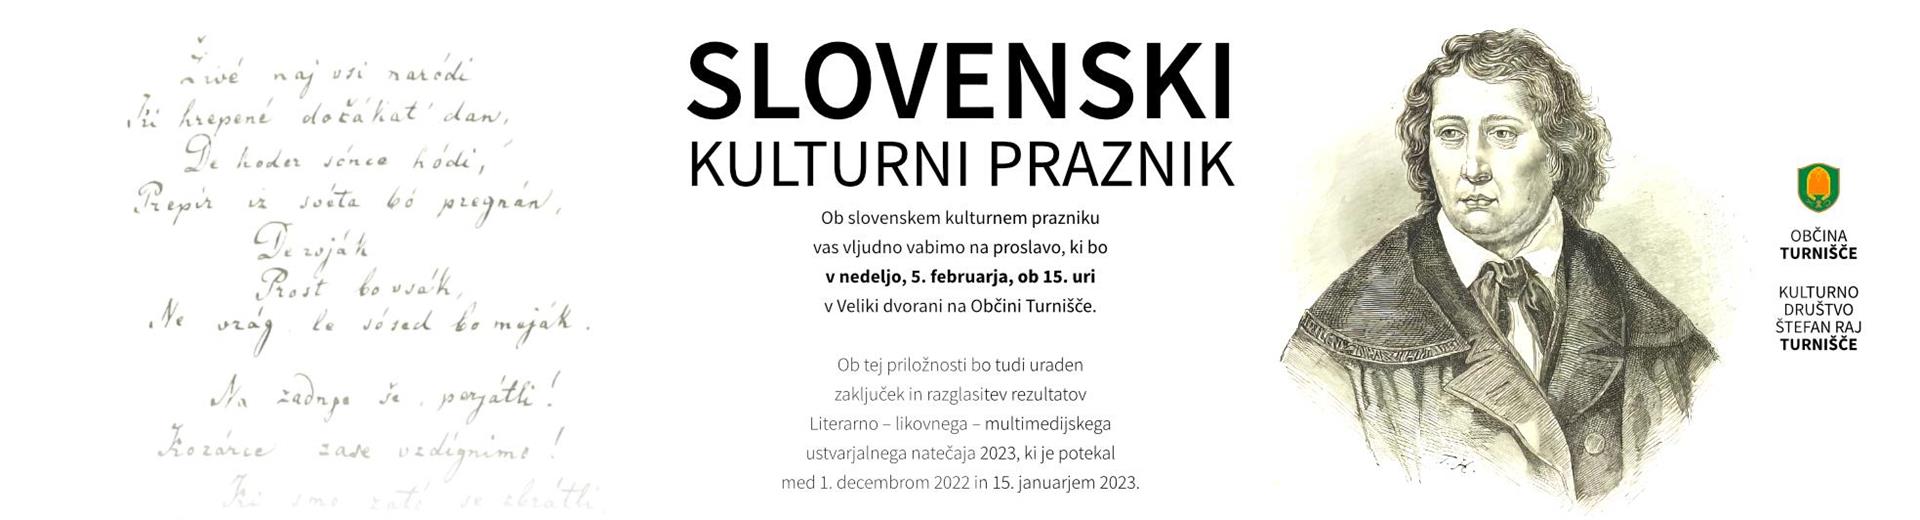 Slovenski kulturni praznik